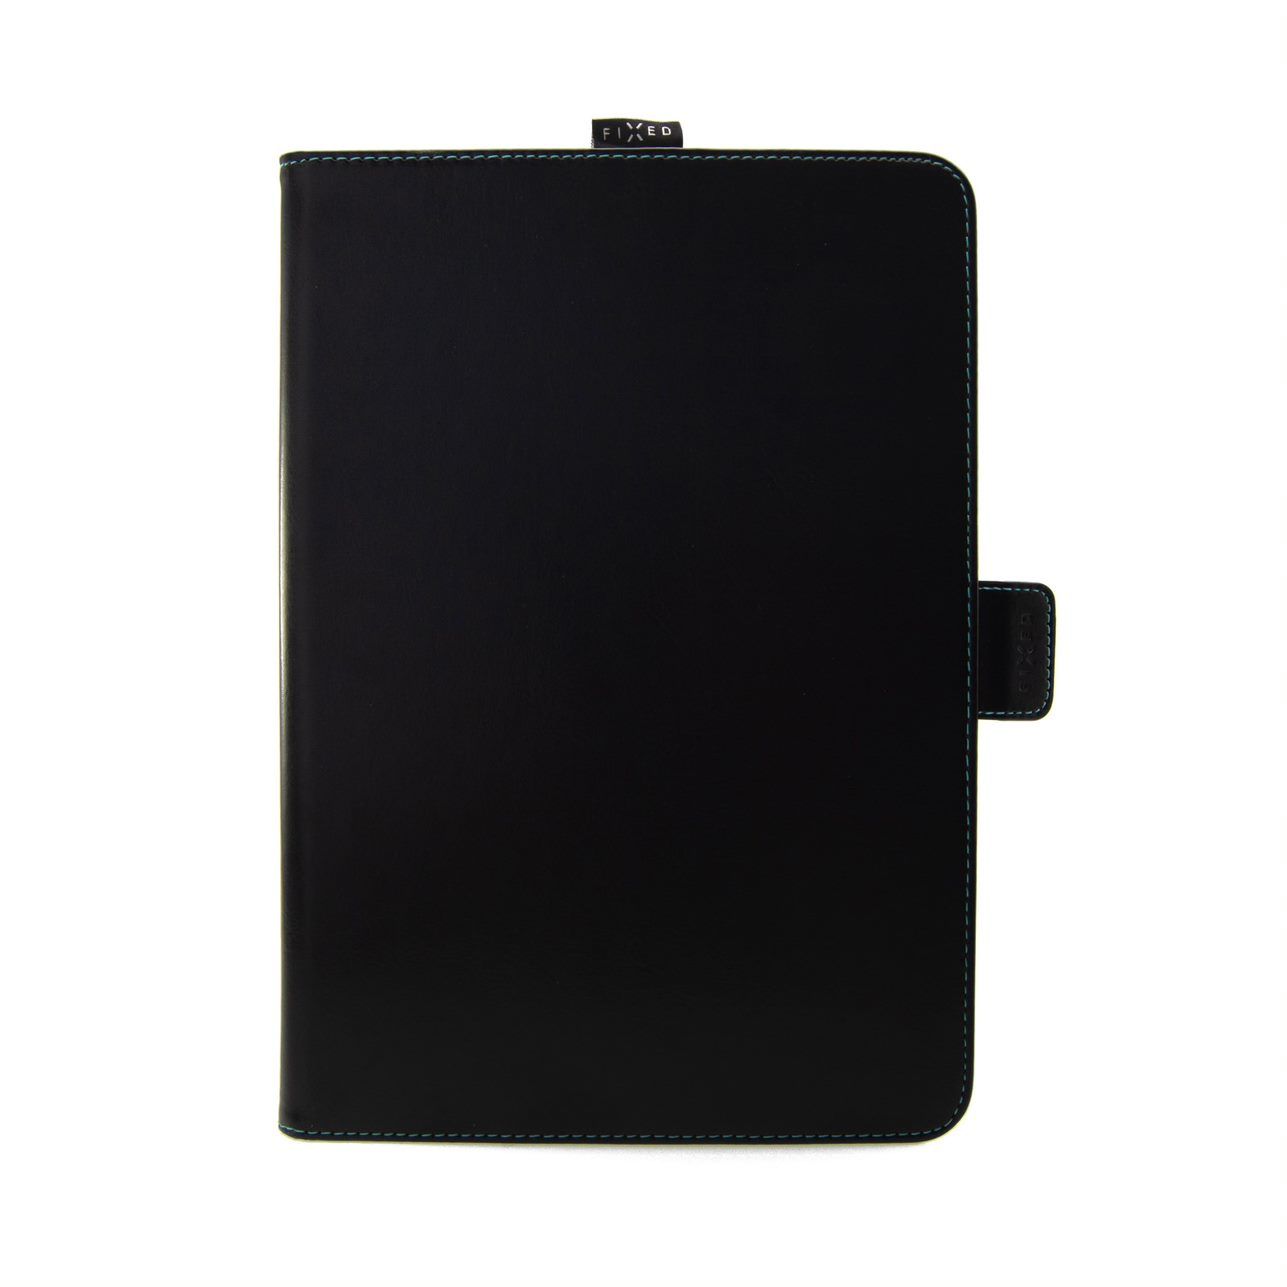 Pouzdro pro 10,1" tablety FIXED Novel se stojánkem a kapsou pro stylus, PU kůže, černé